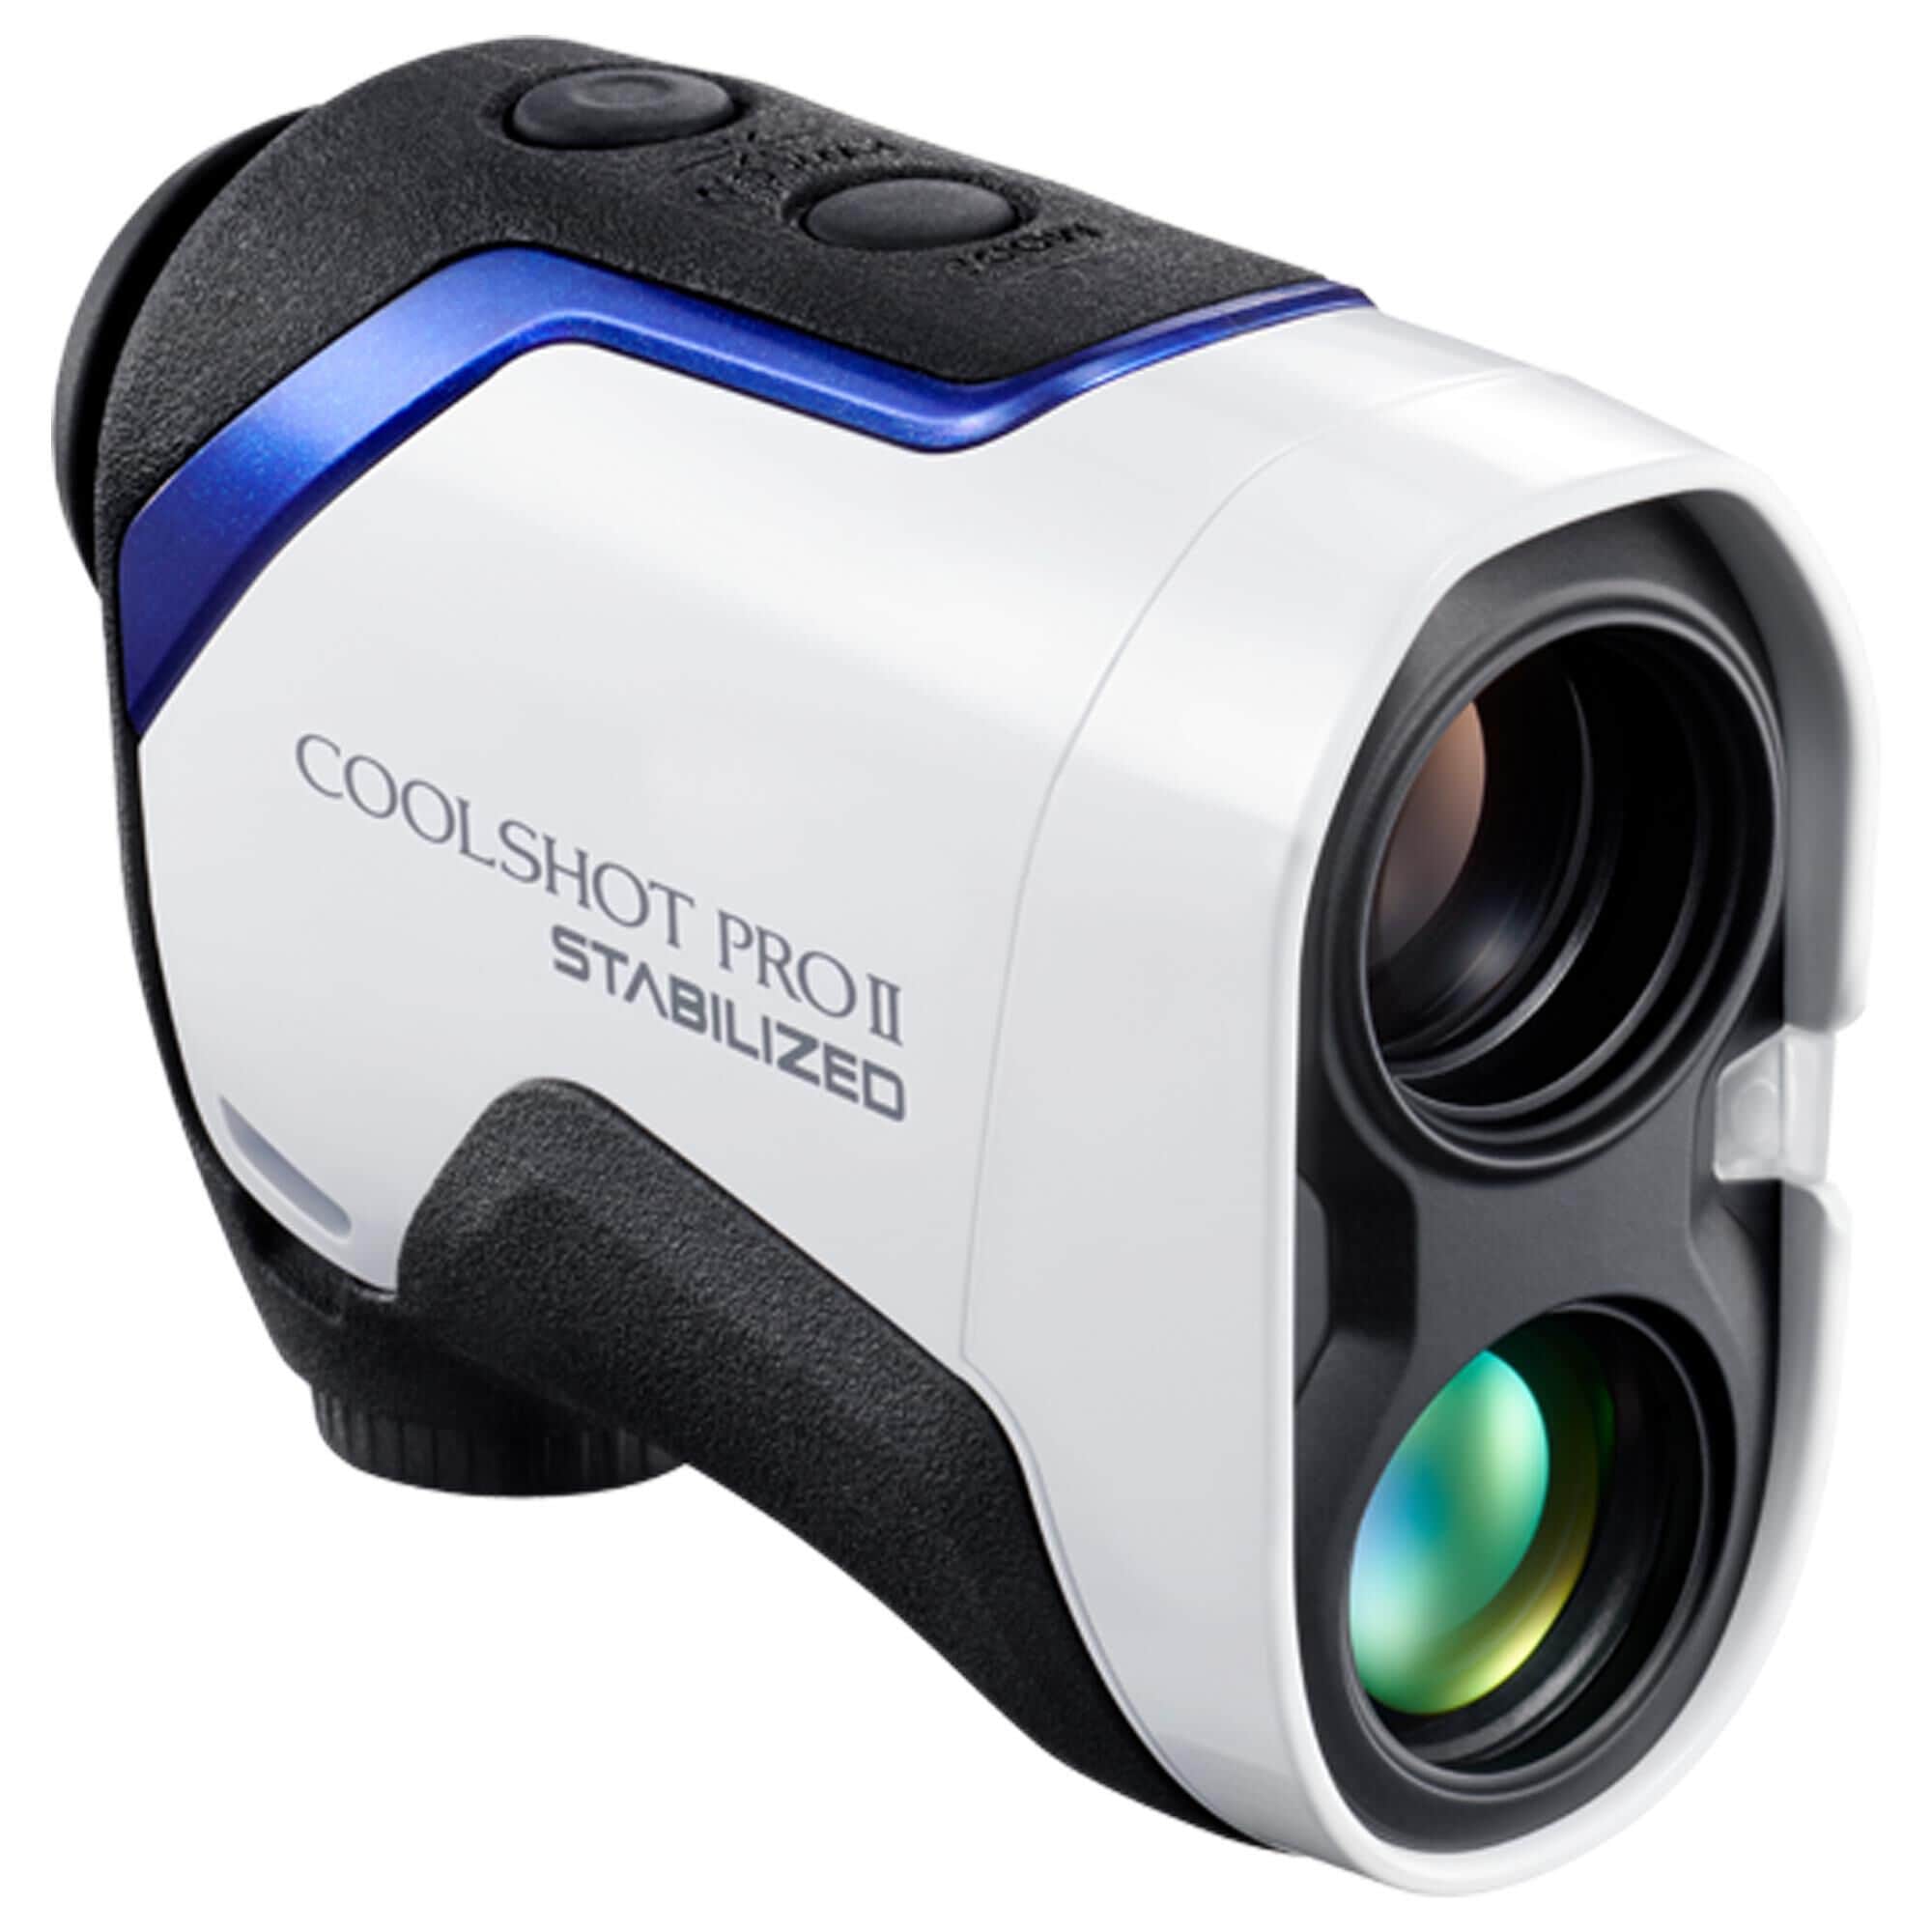 Nikon 6 x 21 CoolShot Pro II Stabilized Laser Rangefinder in White